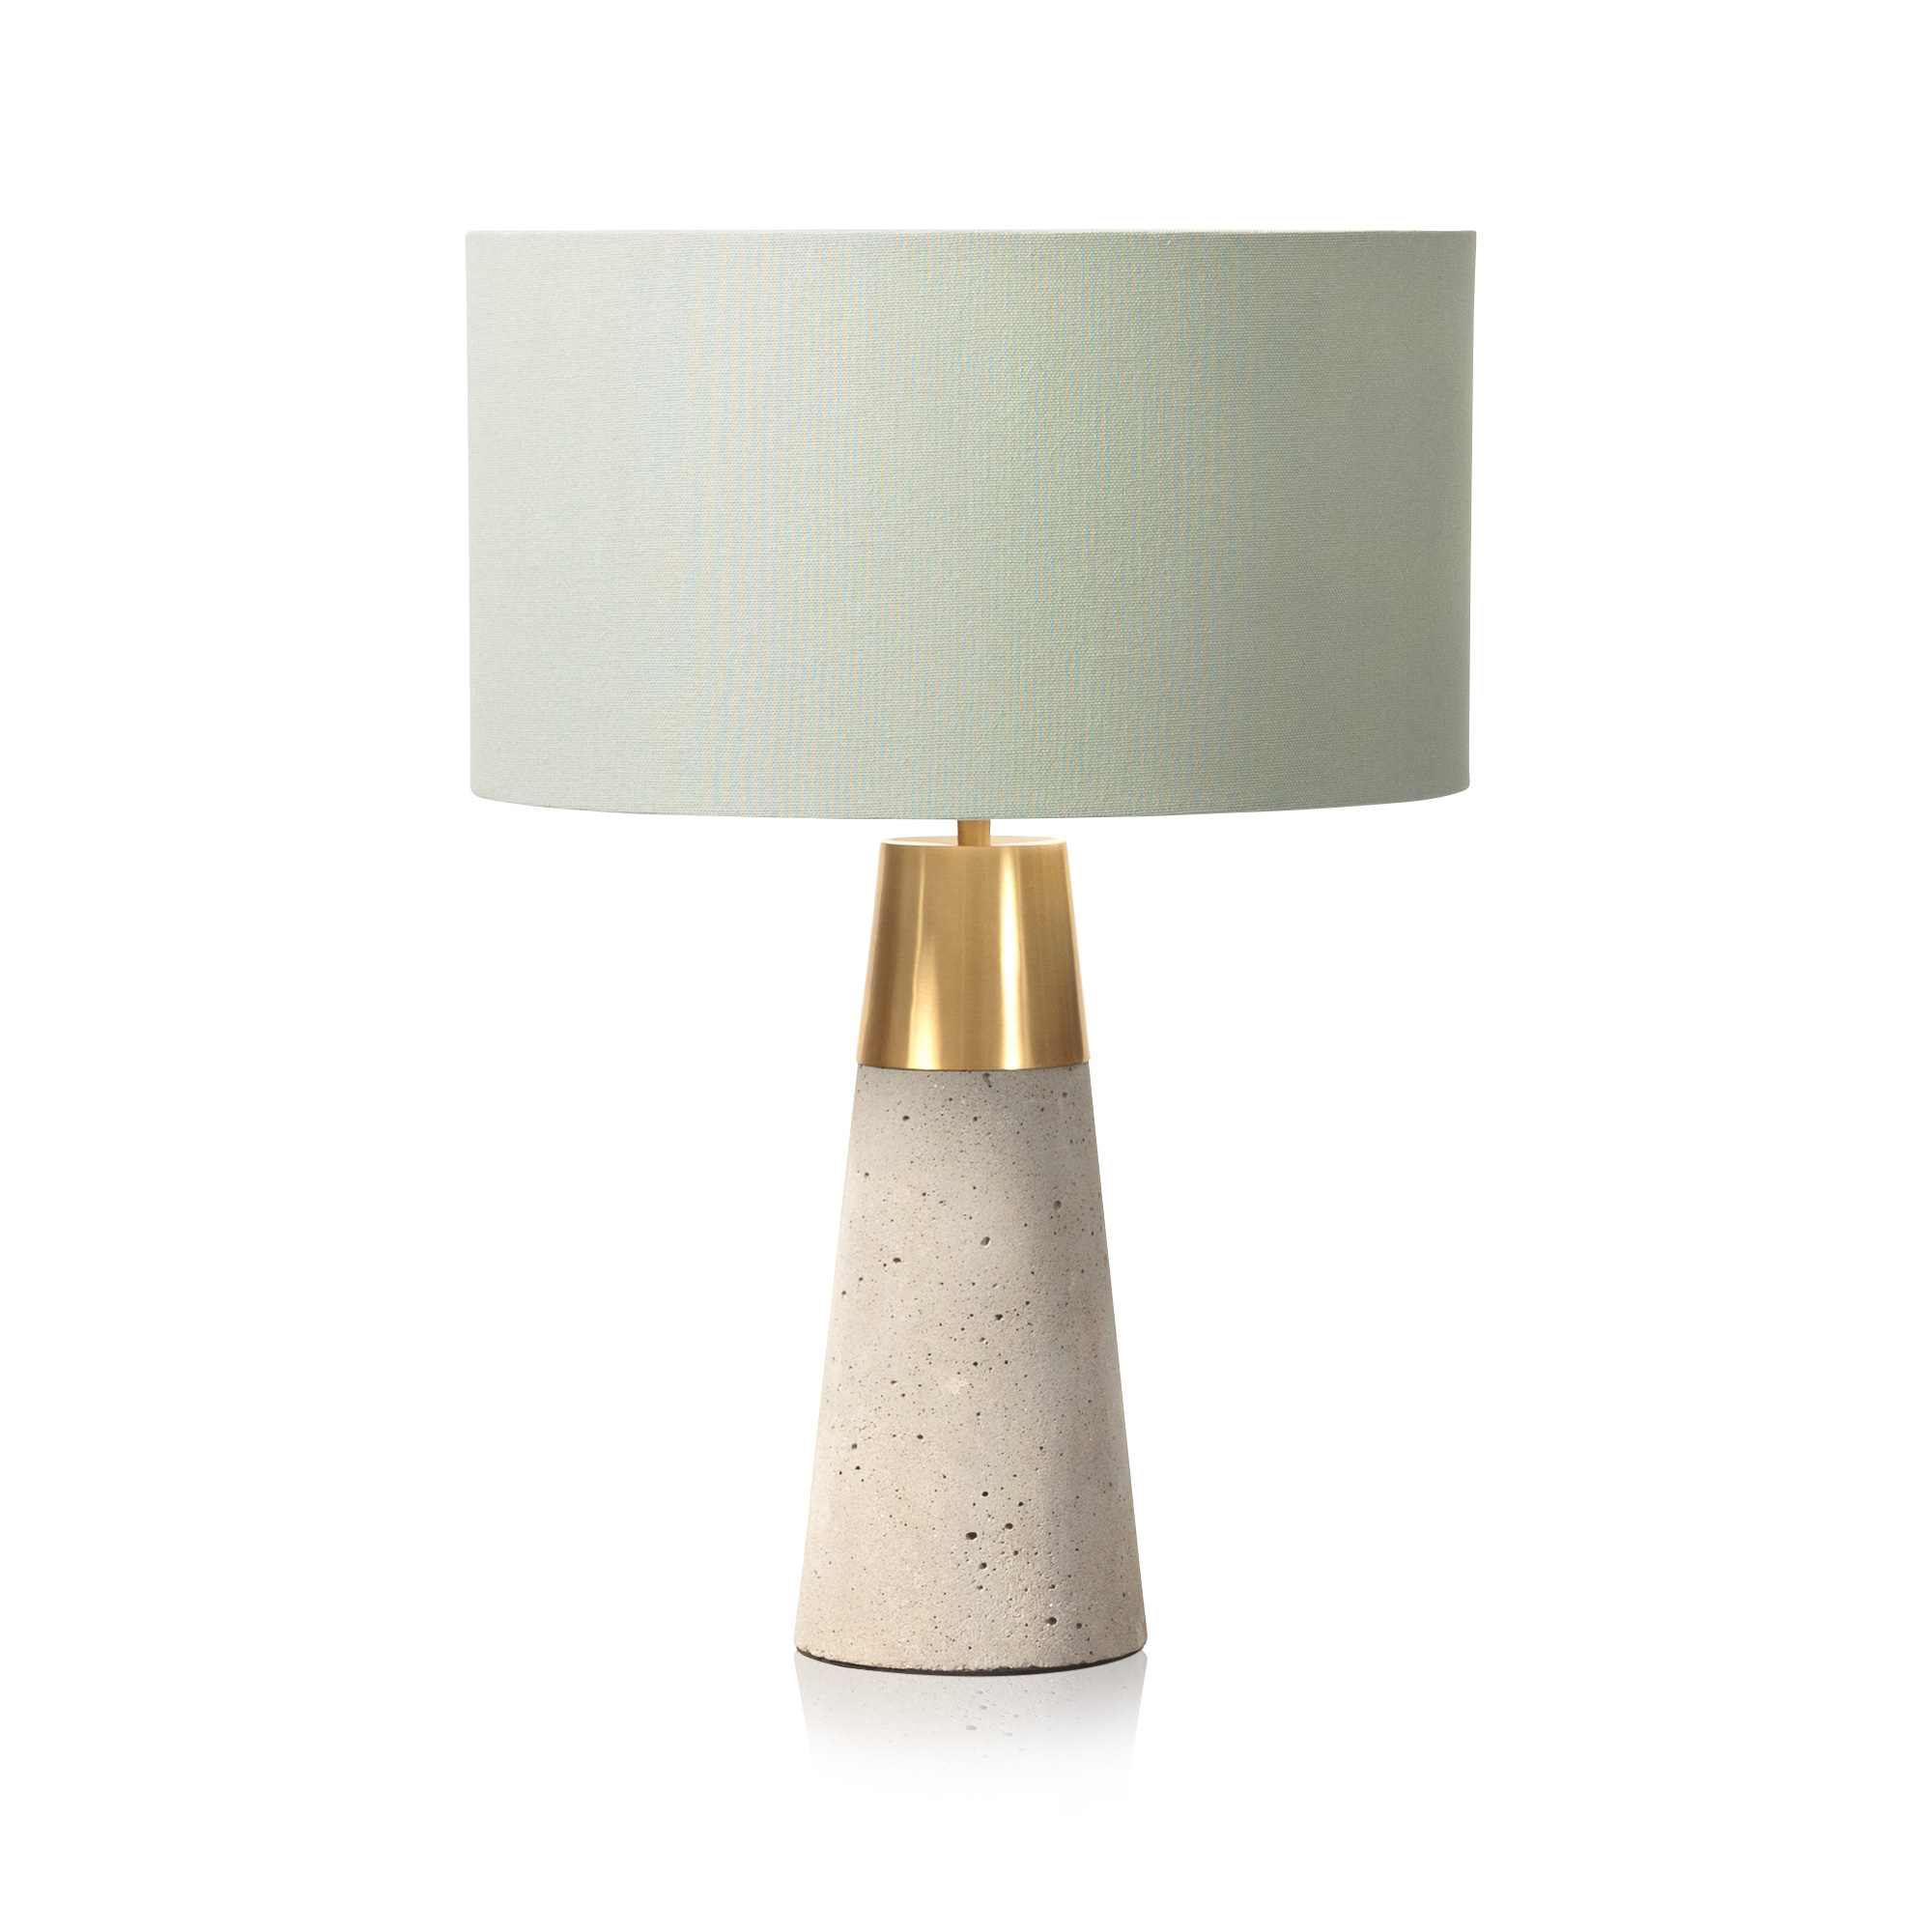 Munari Table Lamp | Oliver Bonas